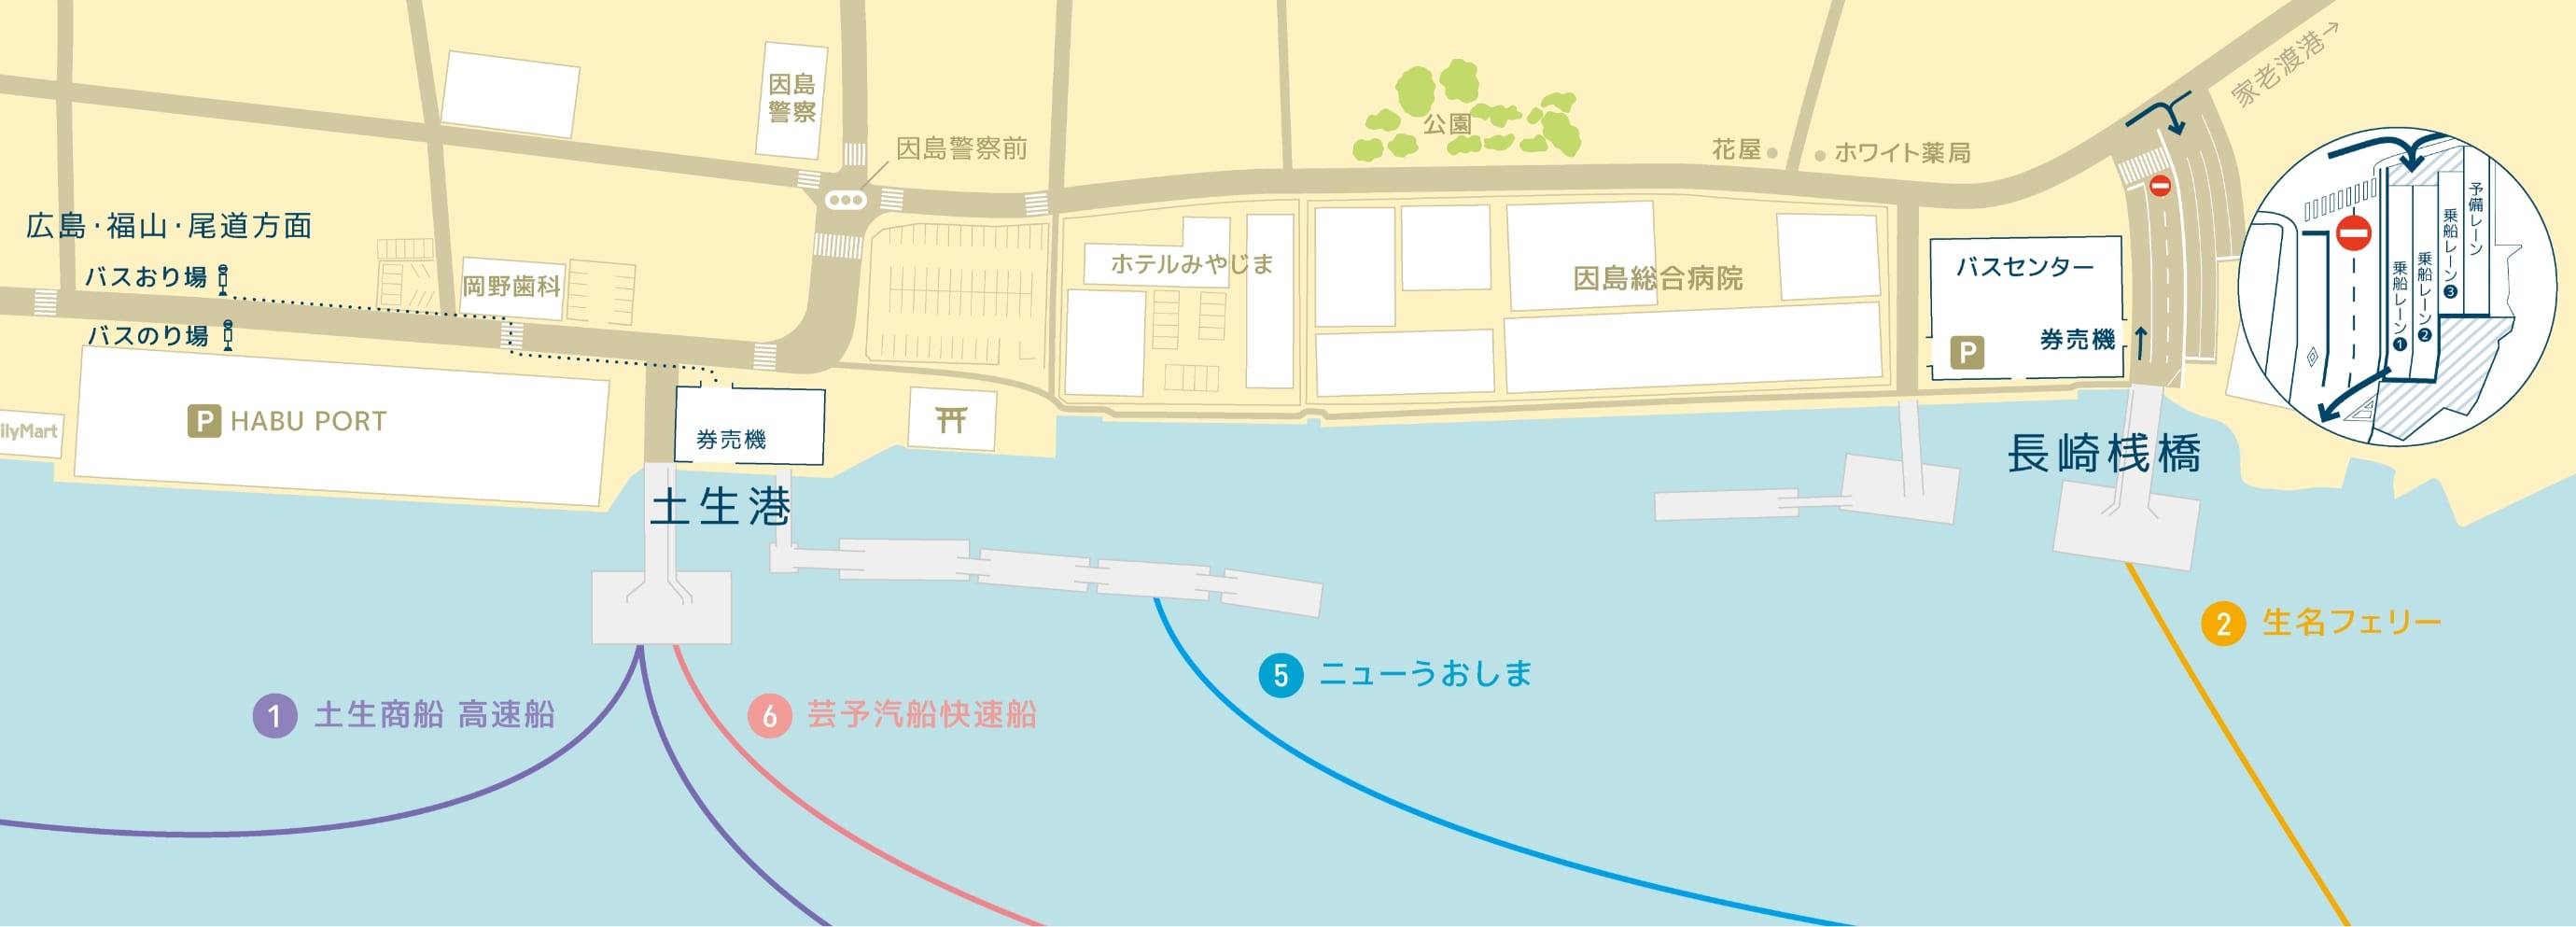 因島土生港・長崎桟橋周辺MAP